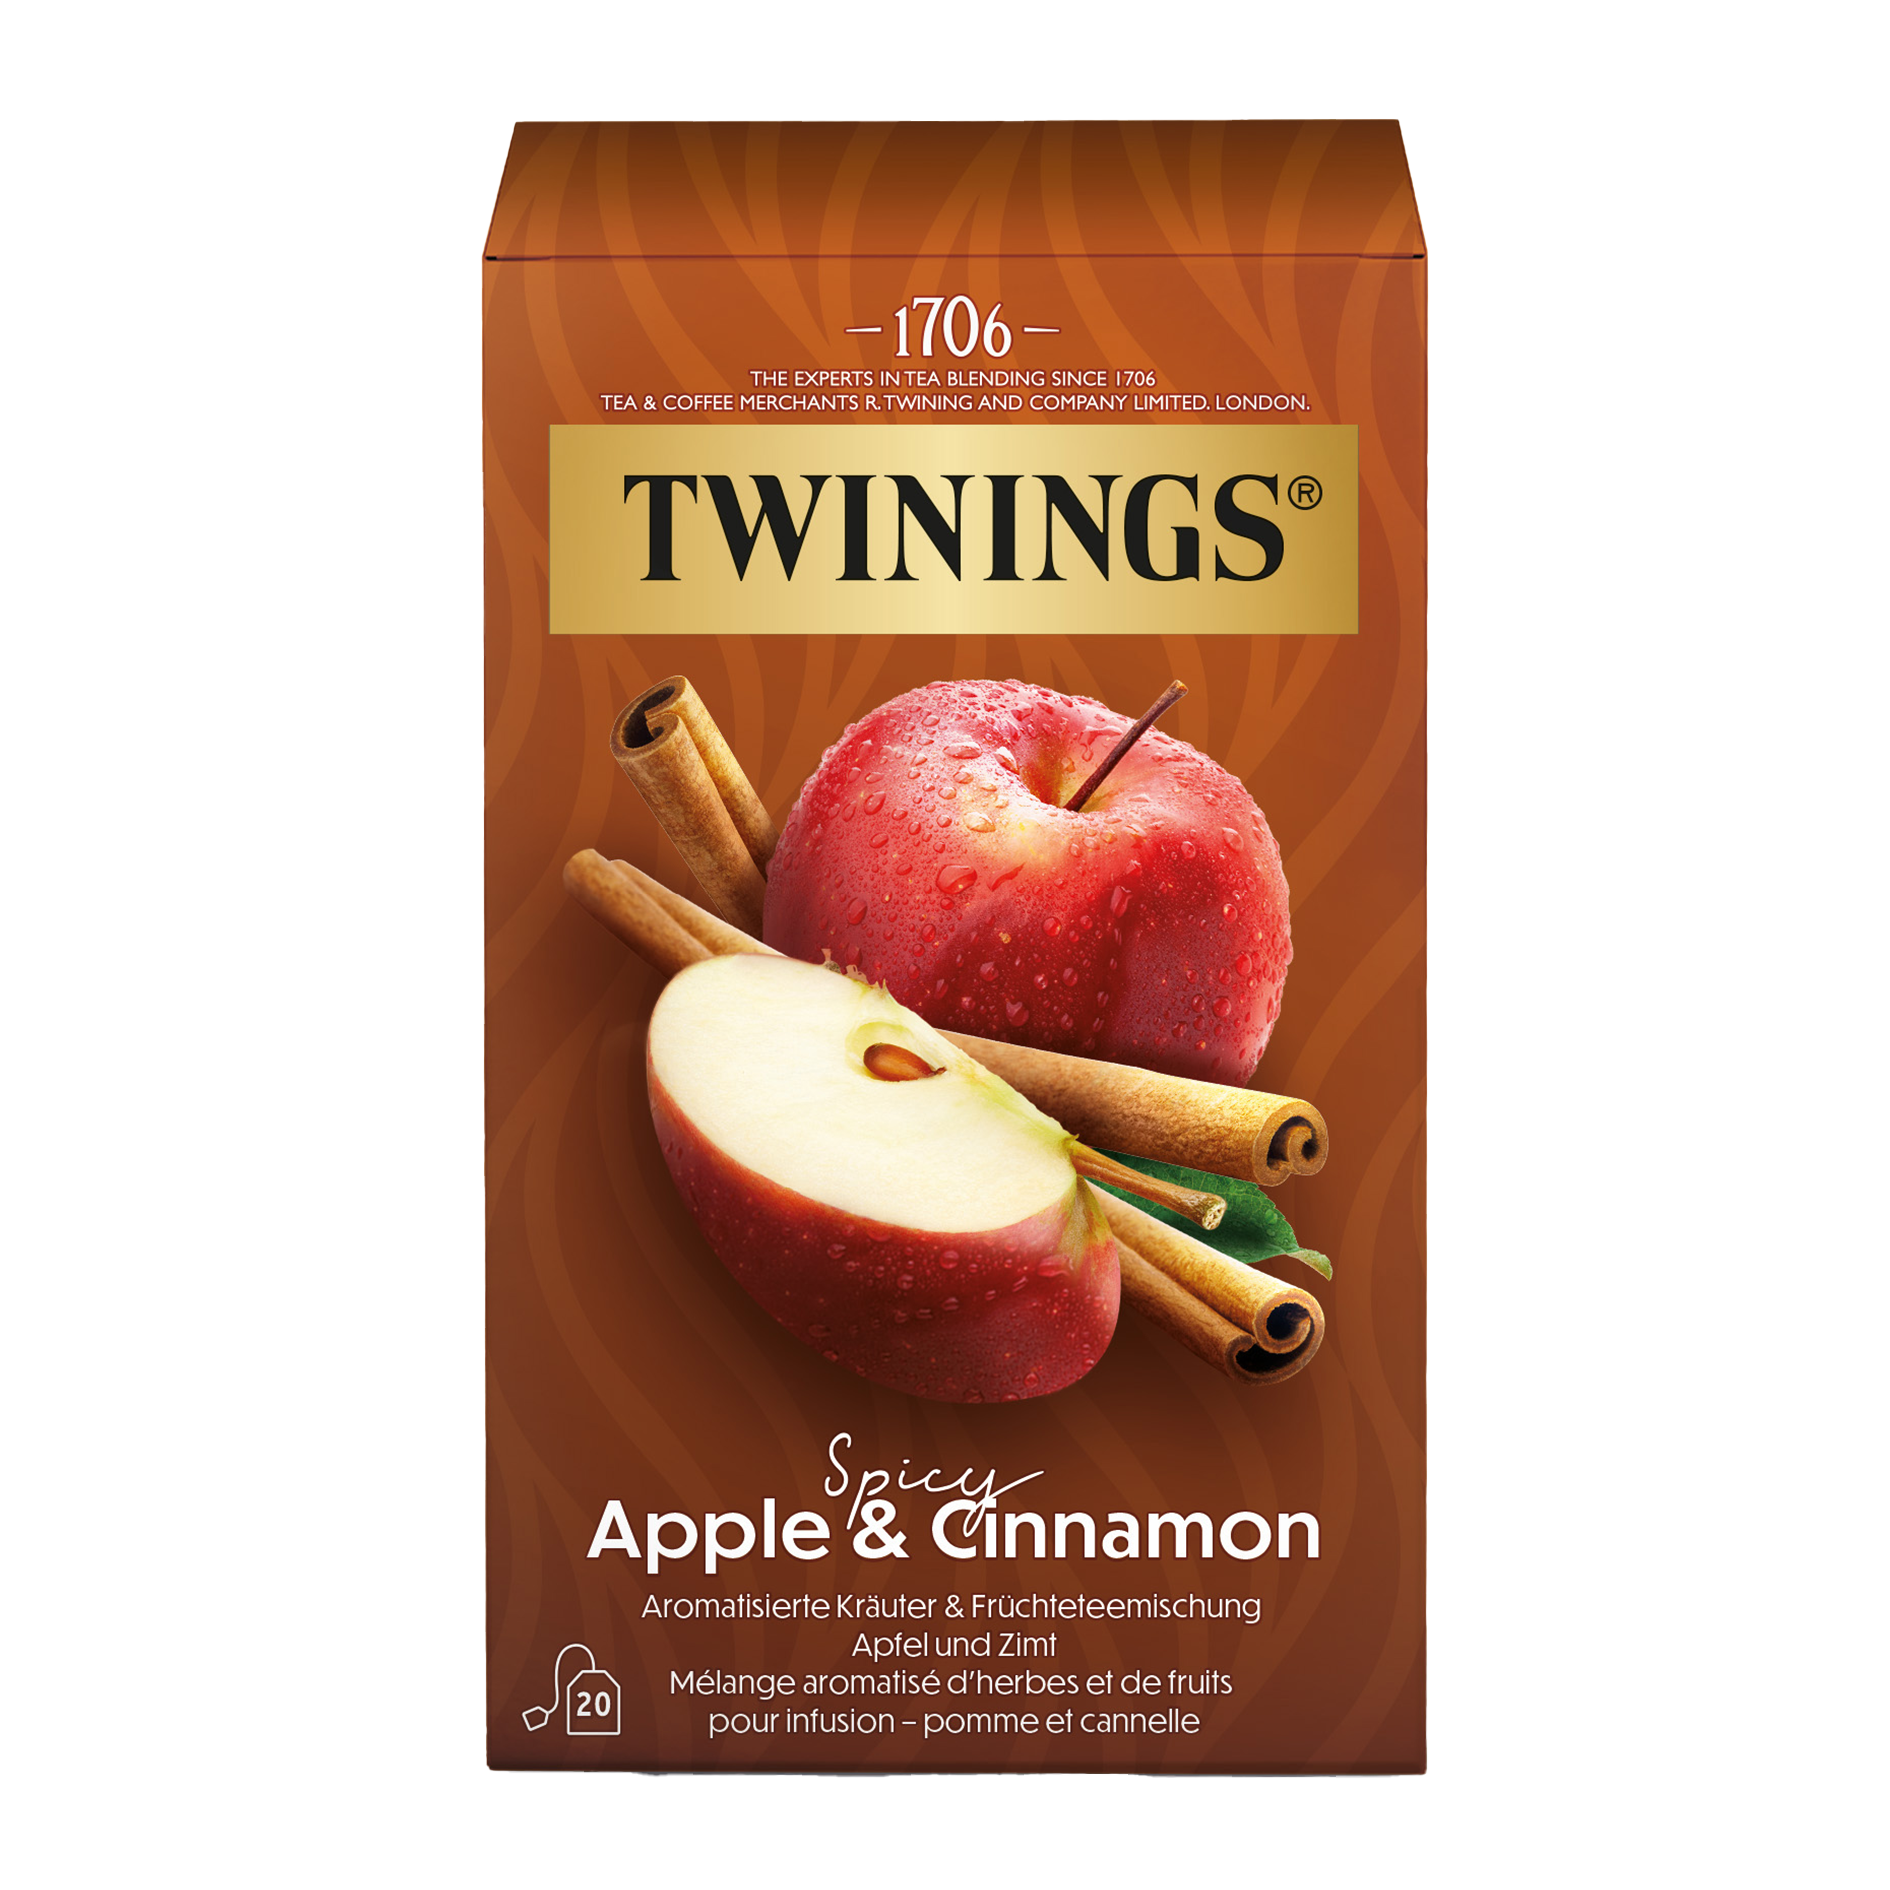  Apple & Cinnamon Früchtetee - der Sinnliche